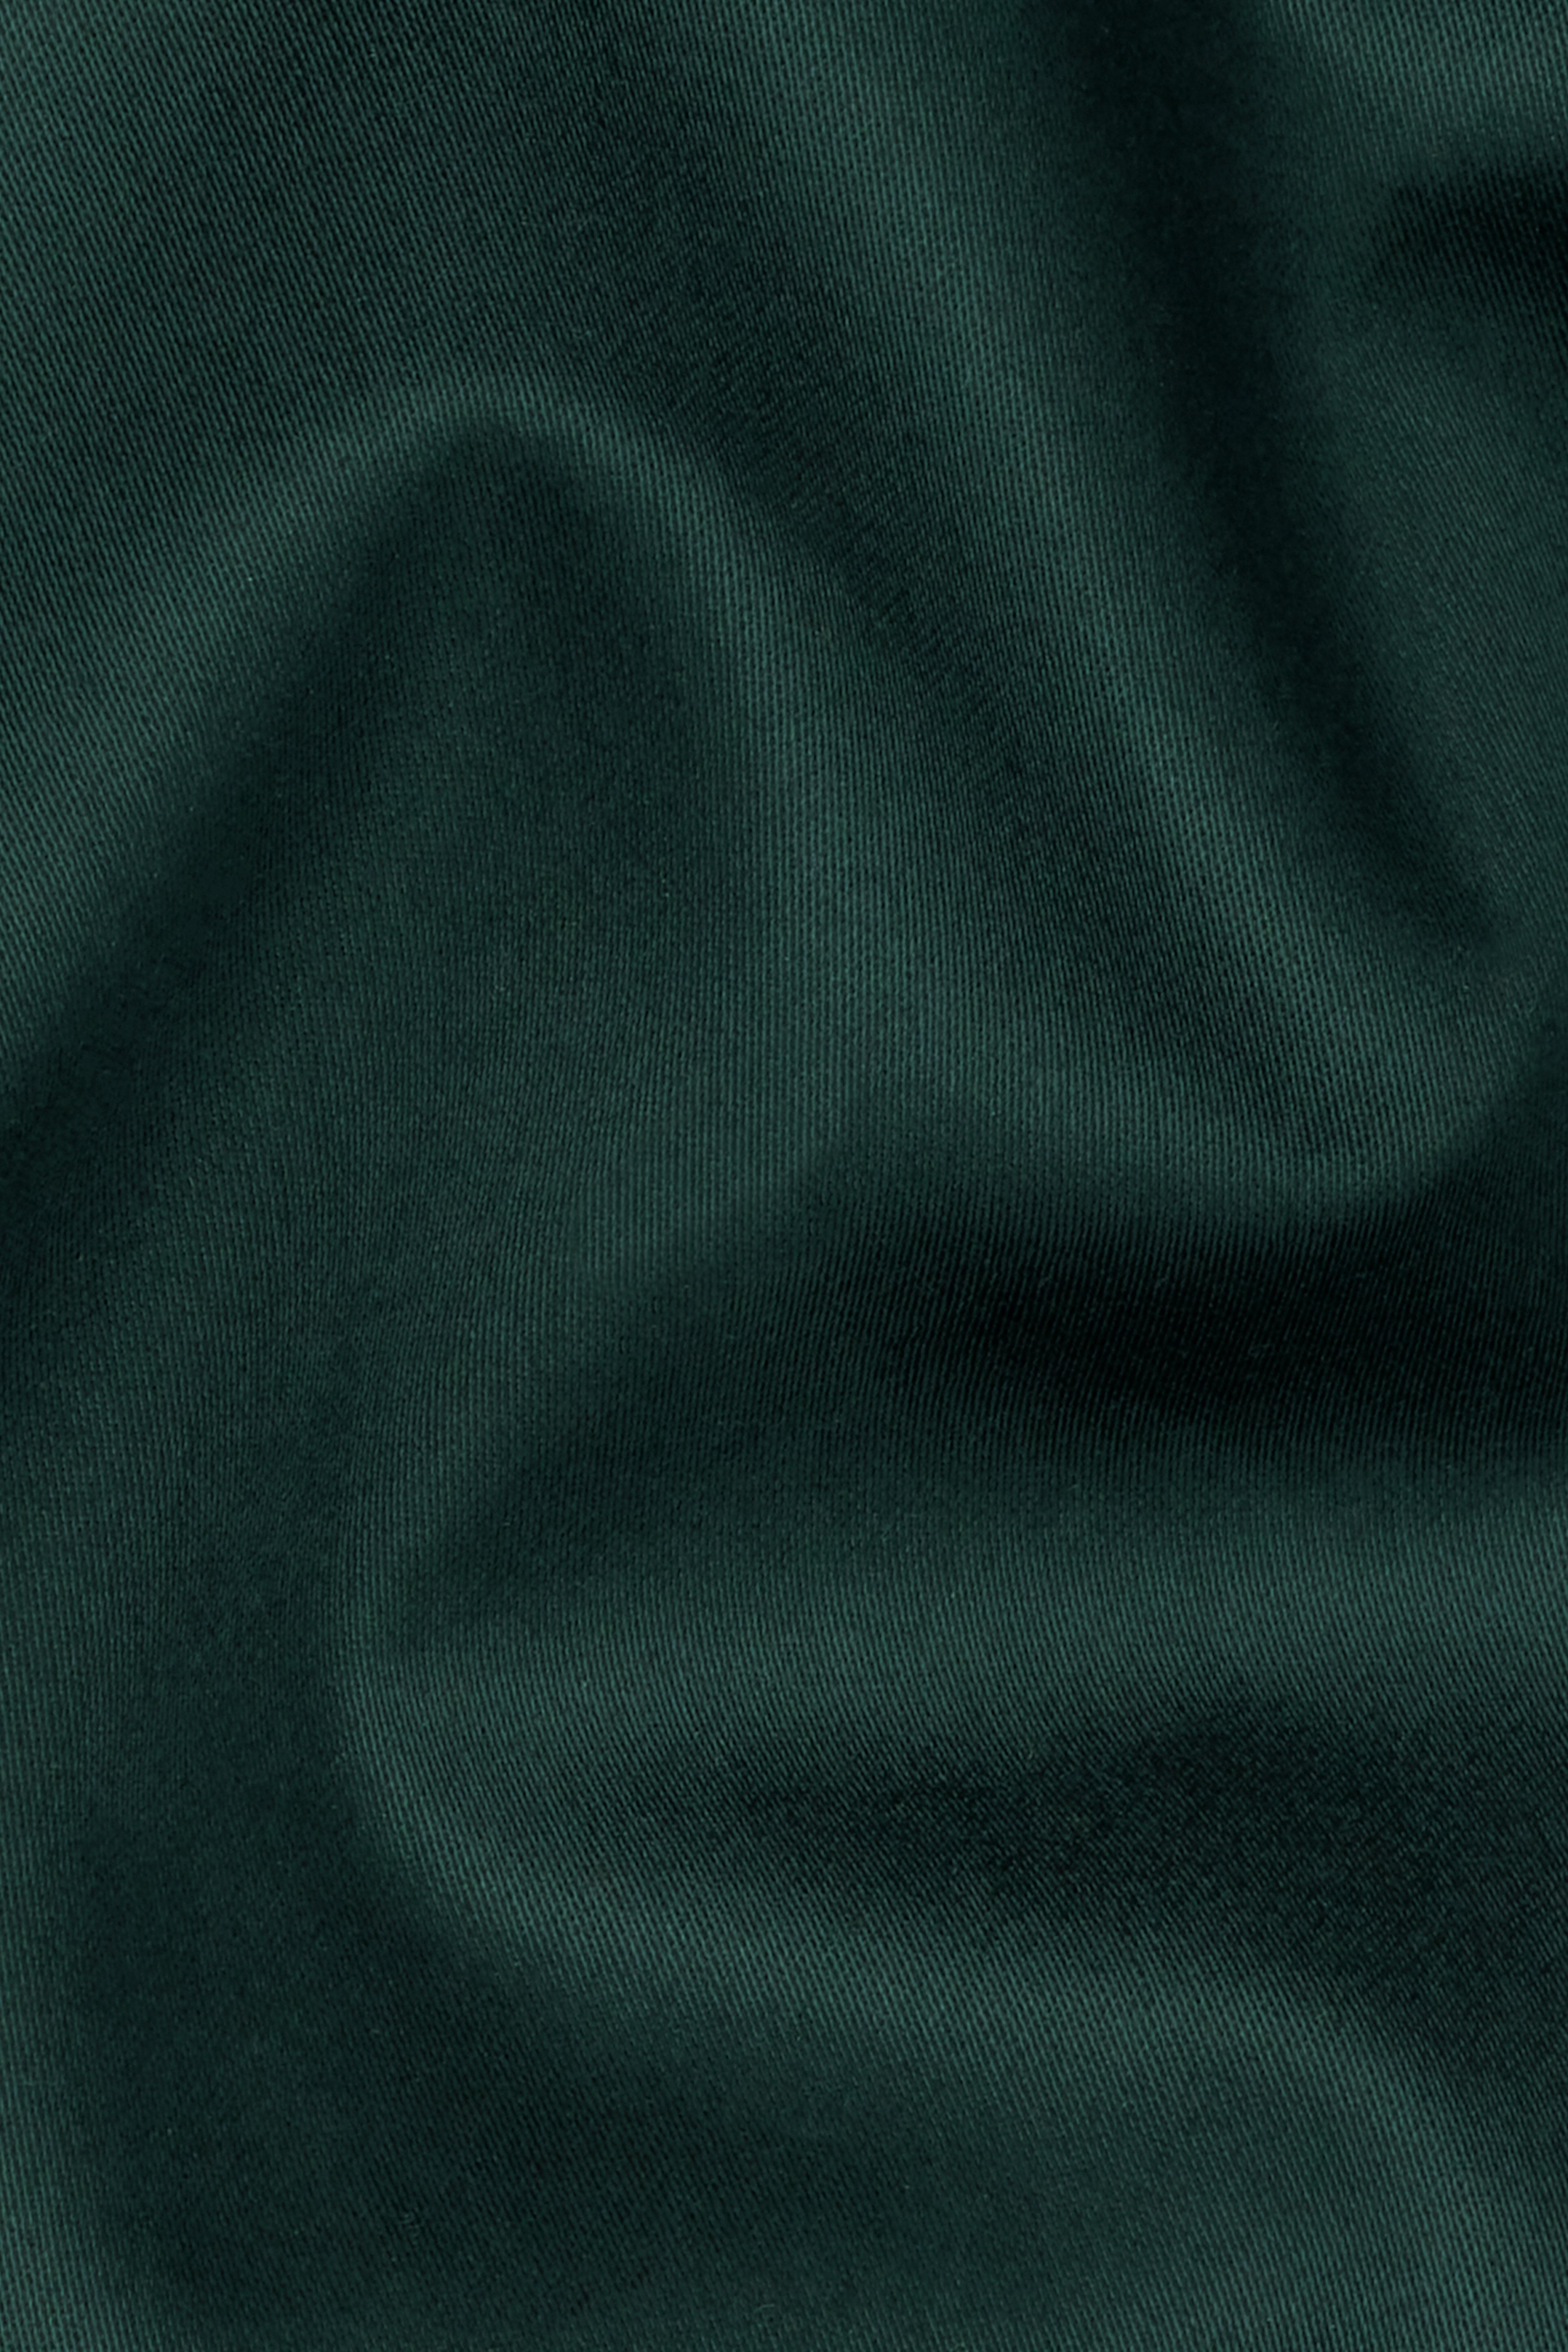 Dark Slate Green Premium Cotton Waistcoat V2739-36, V2739-38, V2739-40, V2739-42, V2739-44, V2739-46, V2739-48, V2739-50, V2739-52, V2739-54, V2739-56, V2739-58, V2739-60